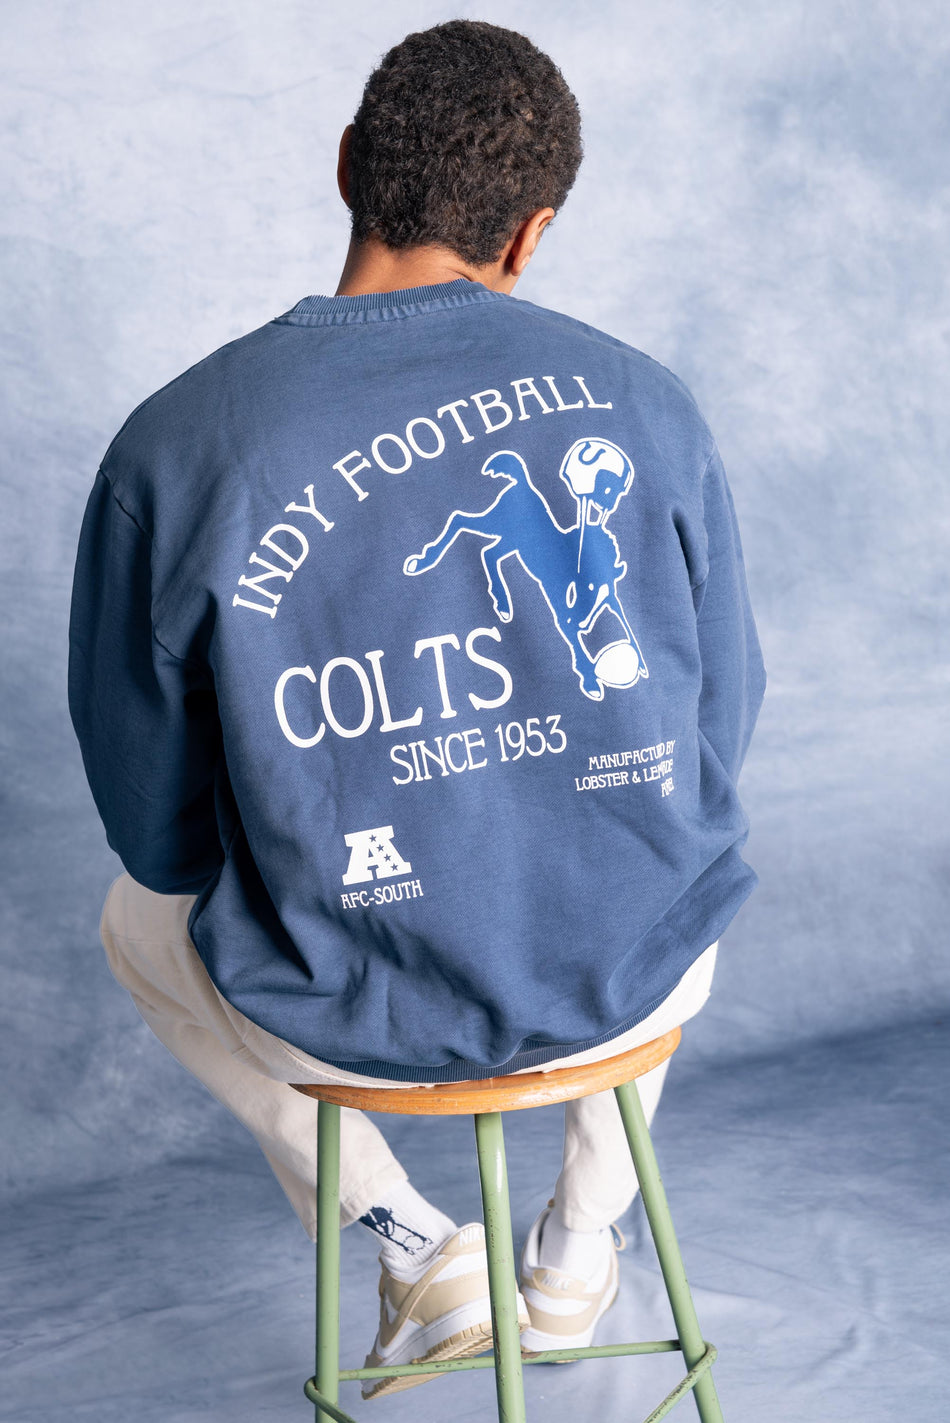 L&L – NFL Classics Colts – ’96 Box Sweater navy